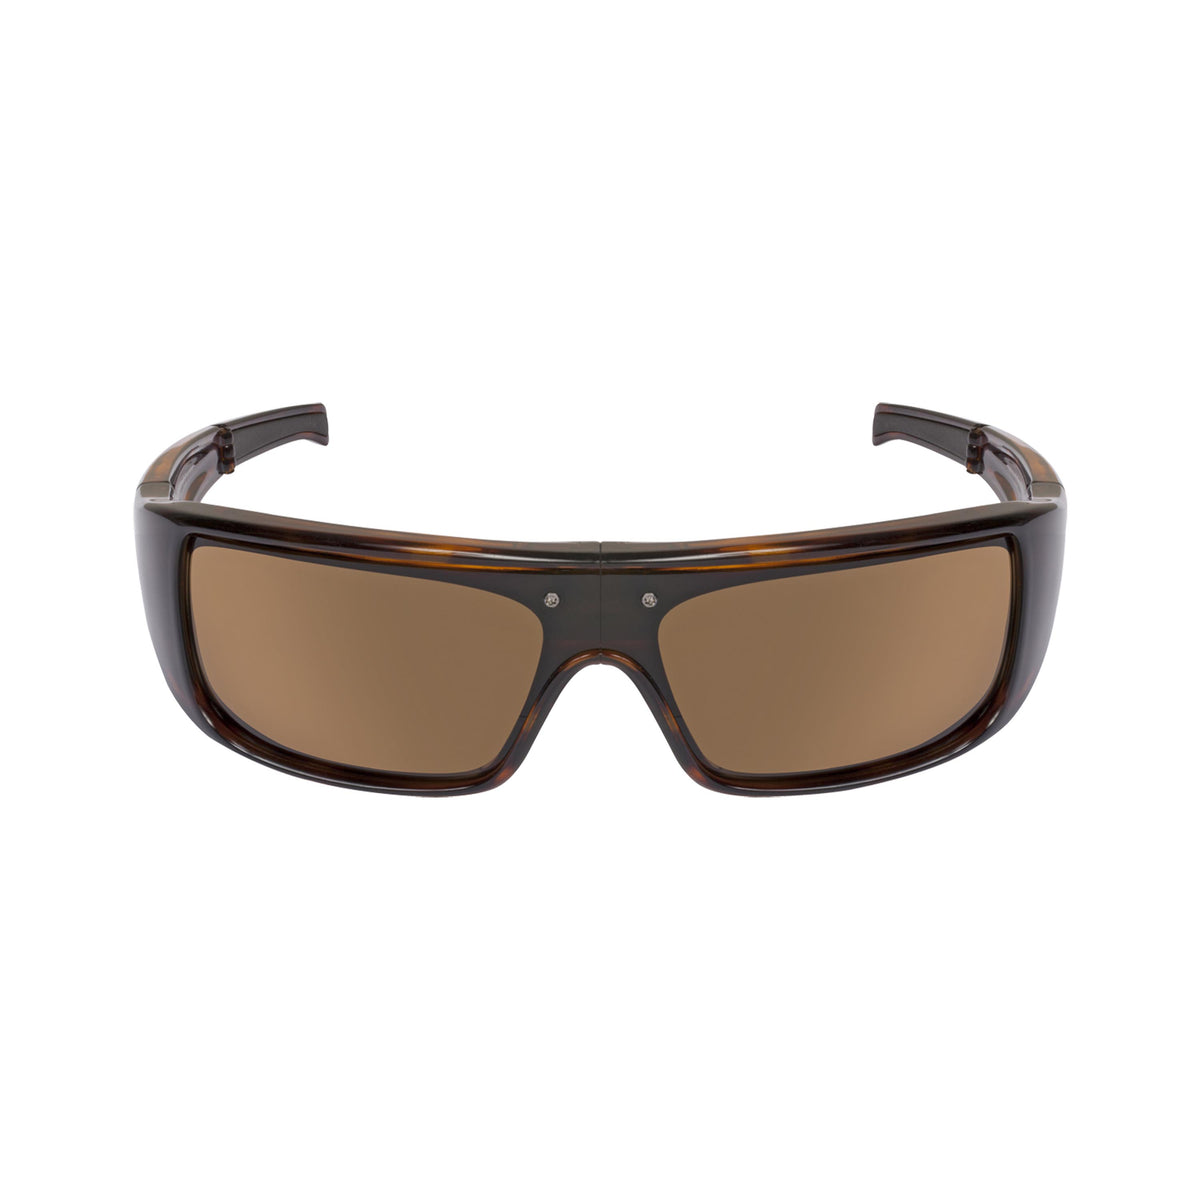 Popticals, Premium Compact Sunglasses, PopGear, 010051-CTNP, Polarized Sunglasses, Gloss Tortoise Frame , Brown Lenses, Front Tilt View